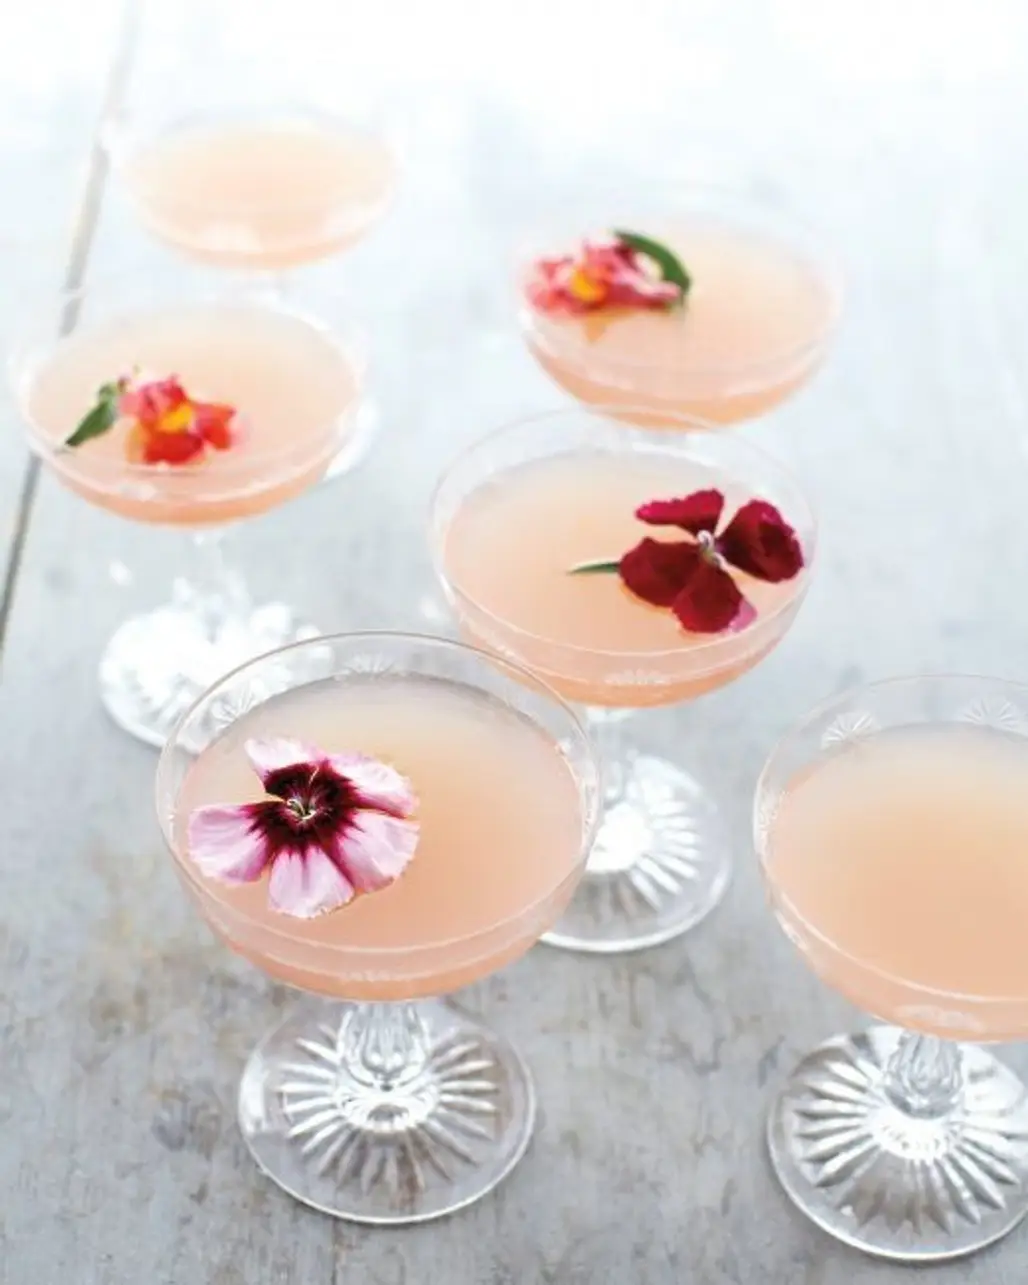 Lillet Rose Spring Cocktail Recipe